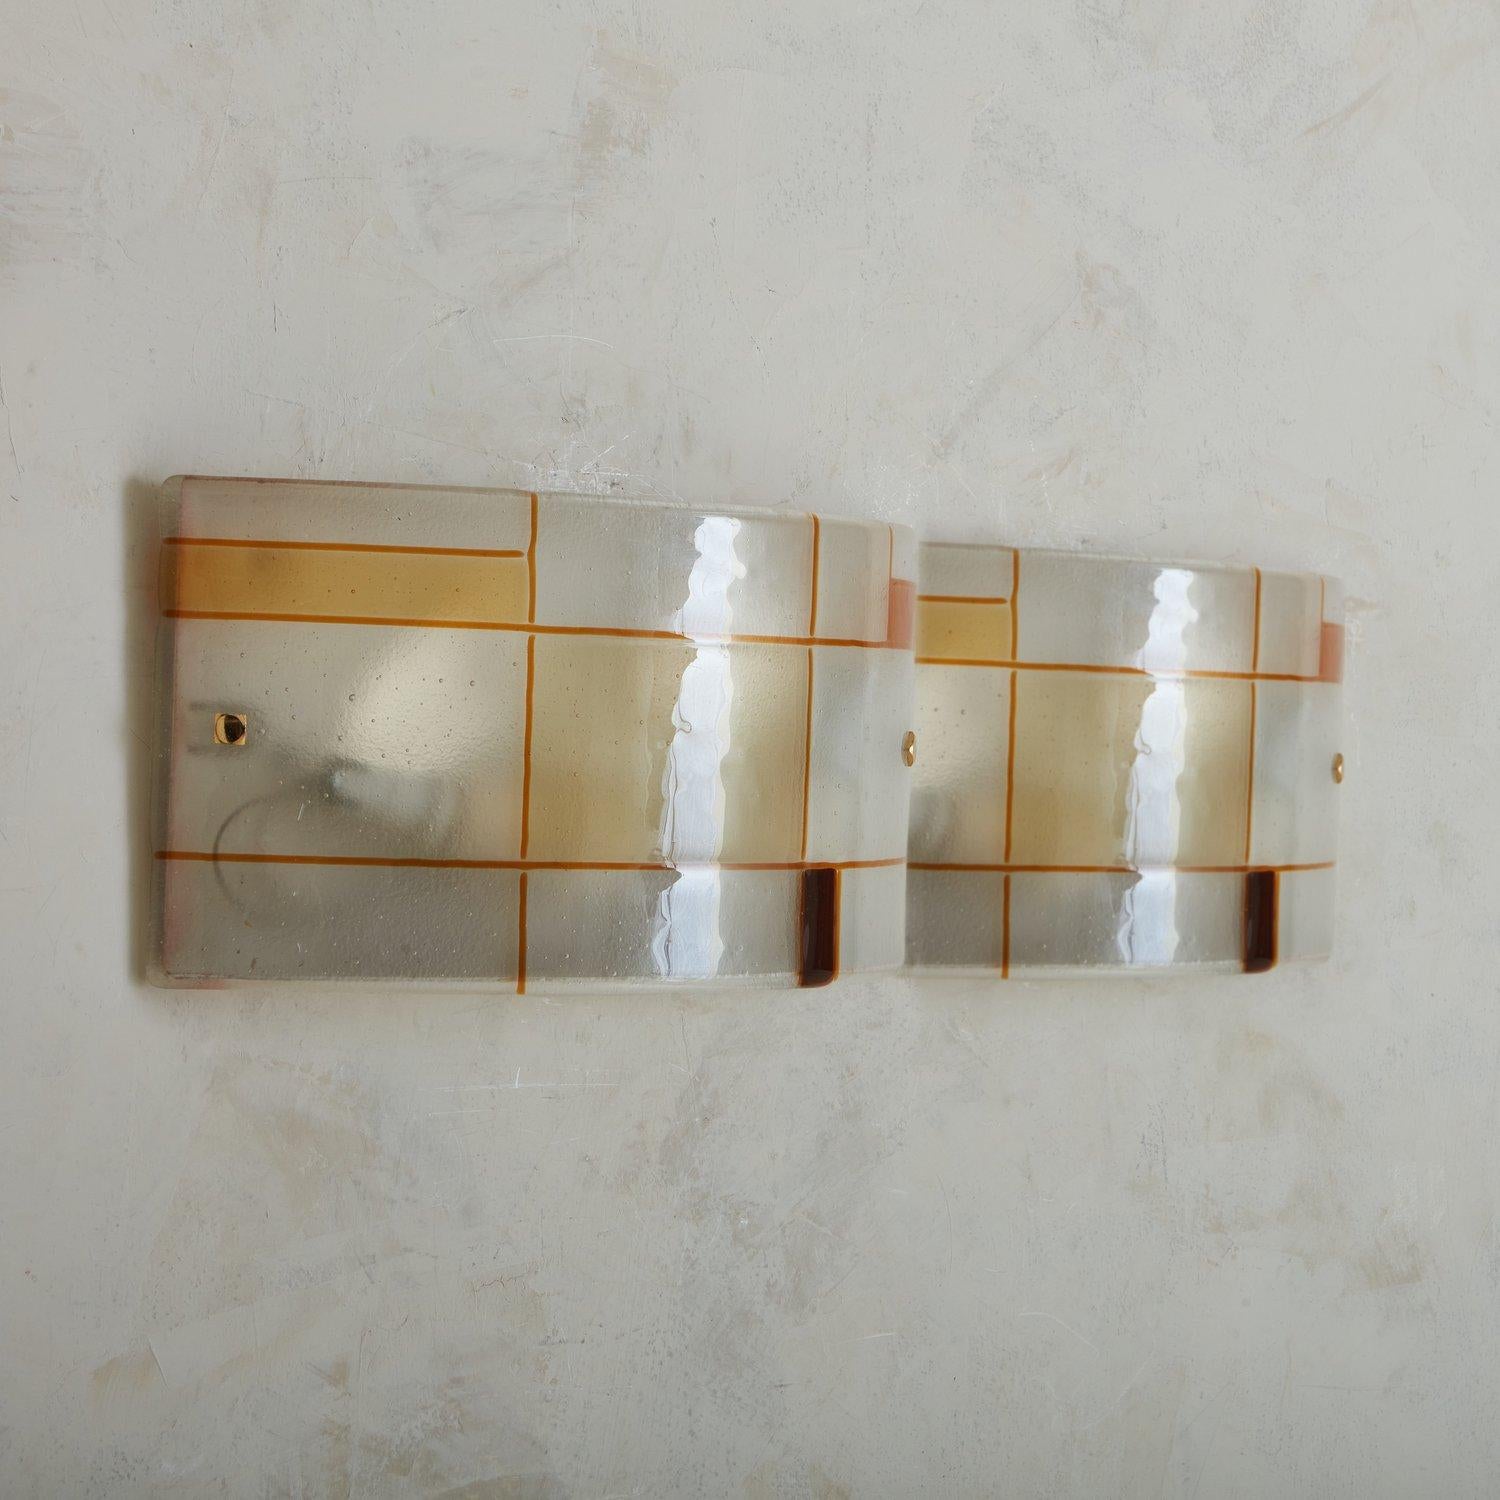 Applique en verre de Murano soufflé à la main datant des années 1960. L'abat-jour est incurvé et présente un motif géométrique d'inspiration Mondrian avec des teintes orange et ambre. L'abat-jour repose sur une base en métal crème démilune avec des